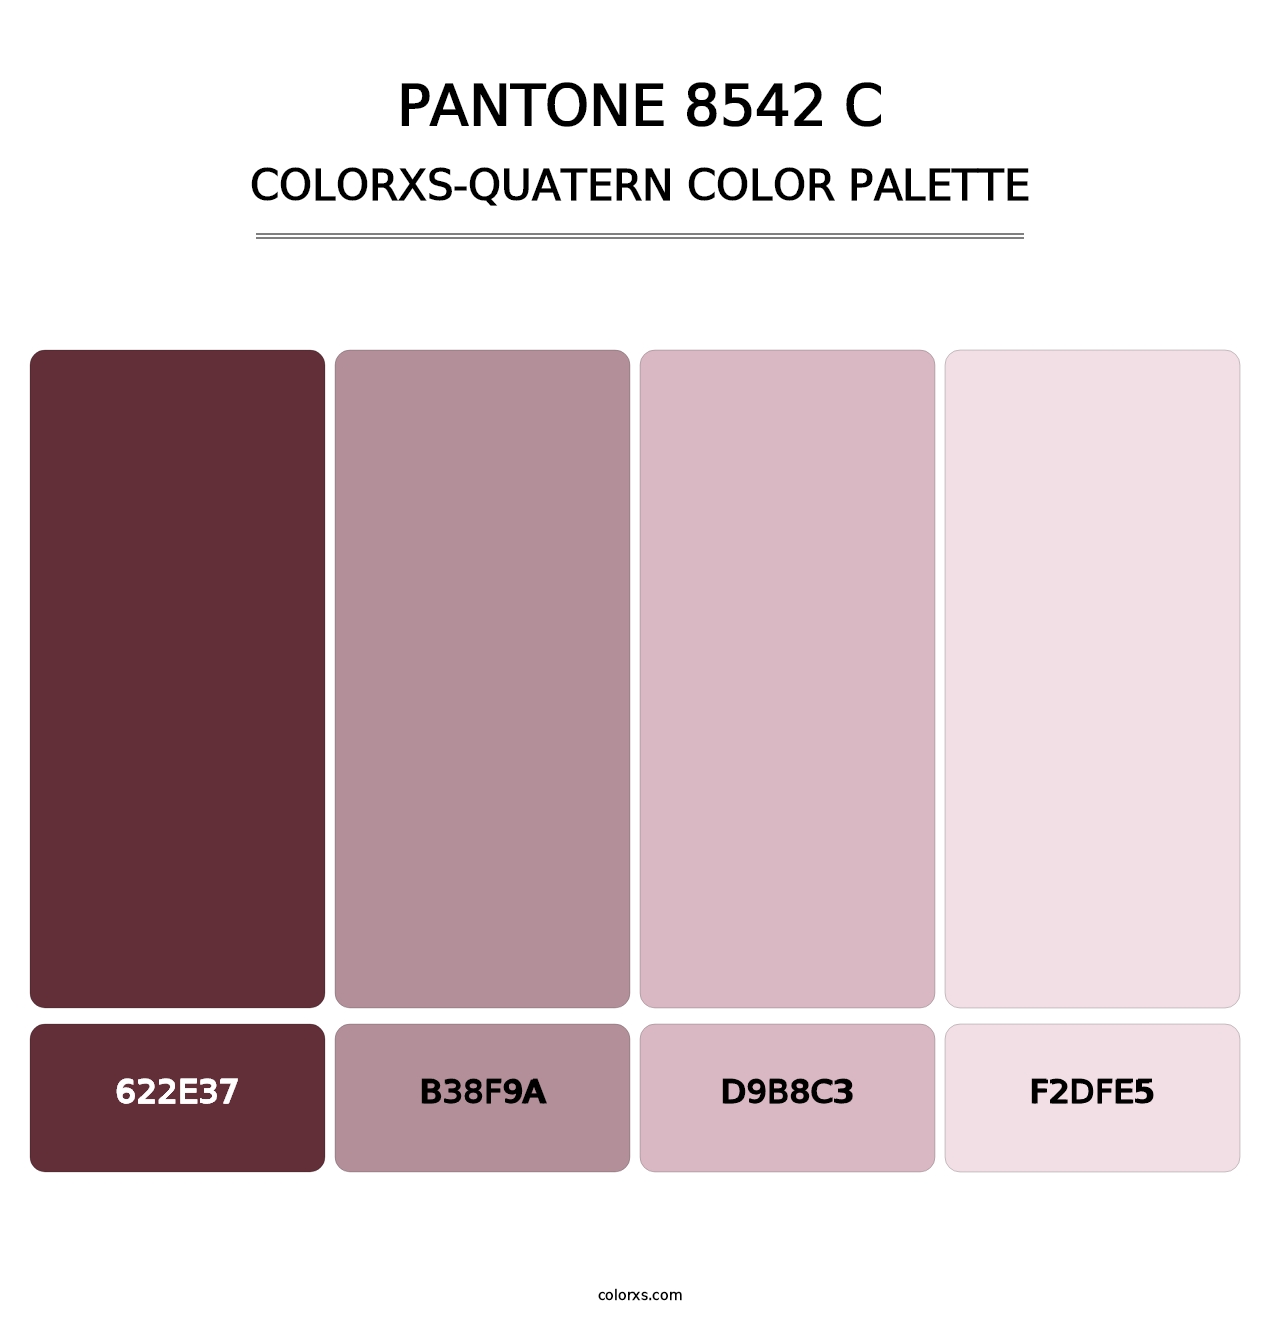 PANTONE 8542 C - Colorxs Quatern Palette